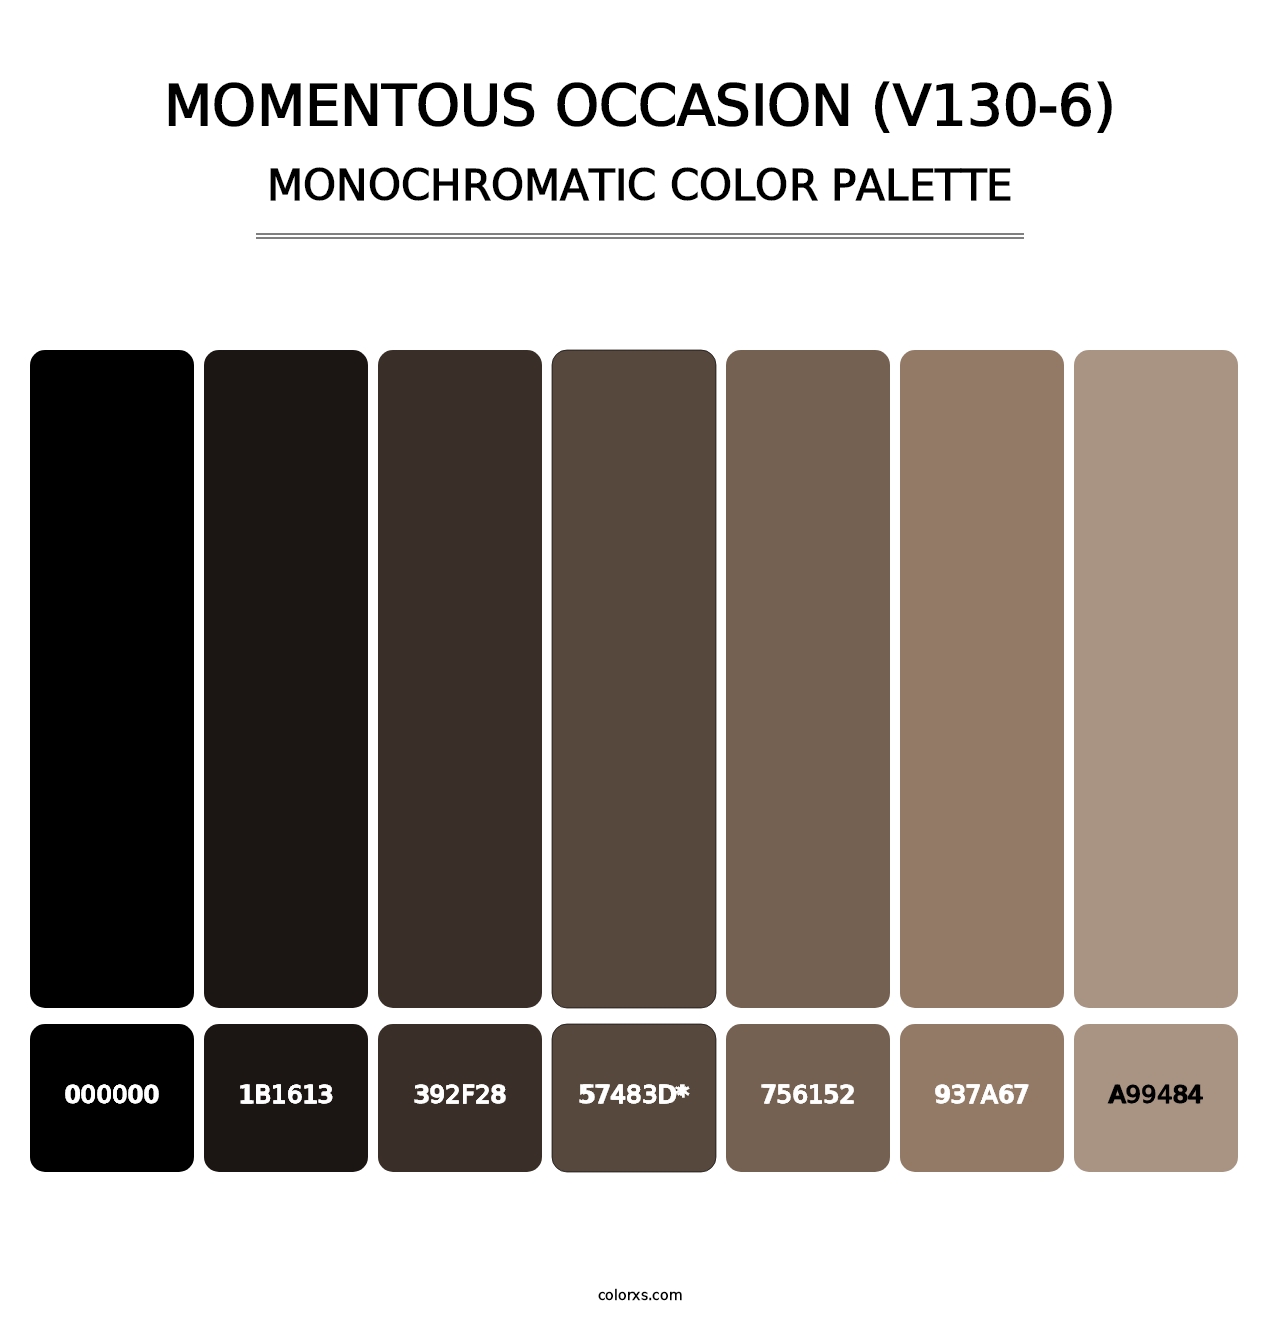 Momentous Occasion (V130-6) - Monochromatic Color Palette